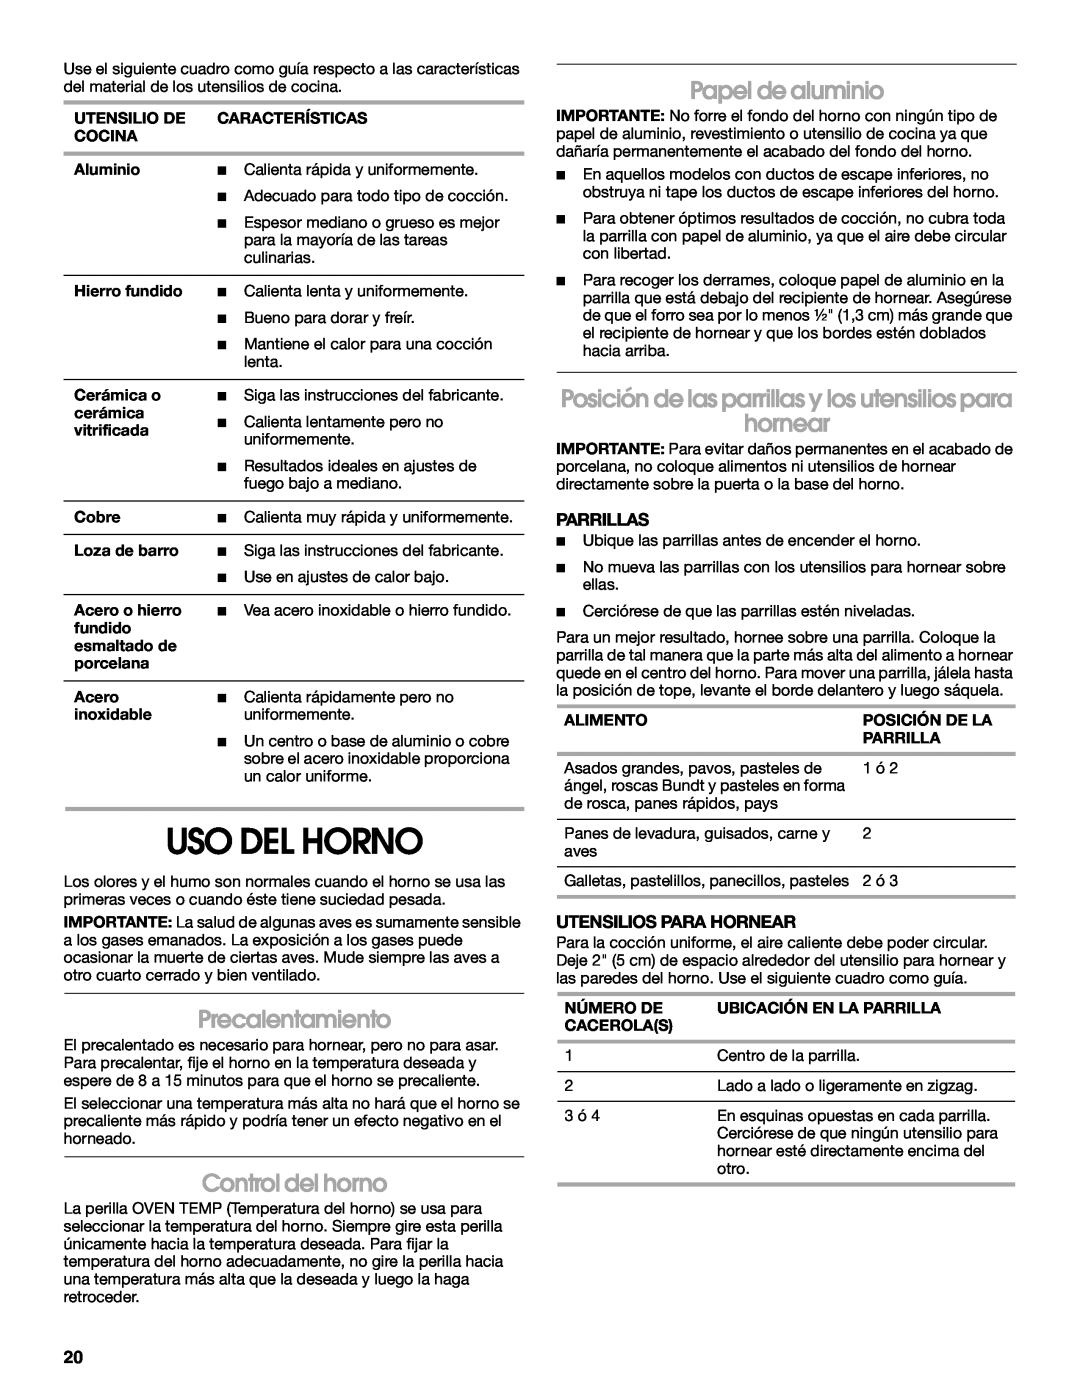 Estate W10173754A manual Uso Del Horno, Precalentamiento, Control del horno, Papel de aluminio, Parrillas 